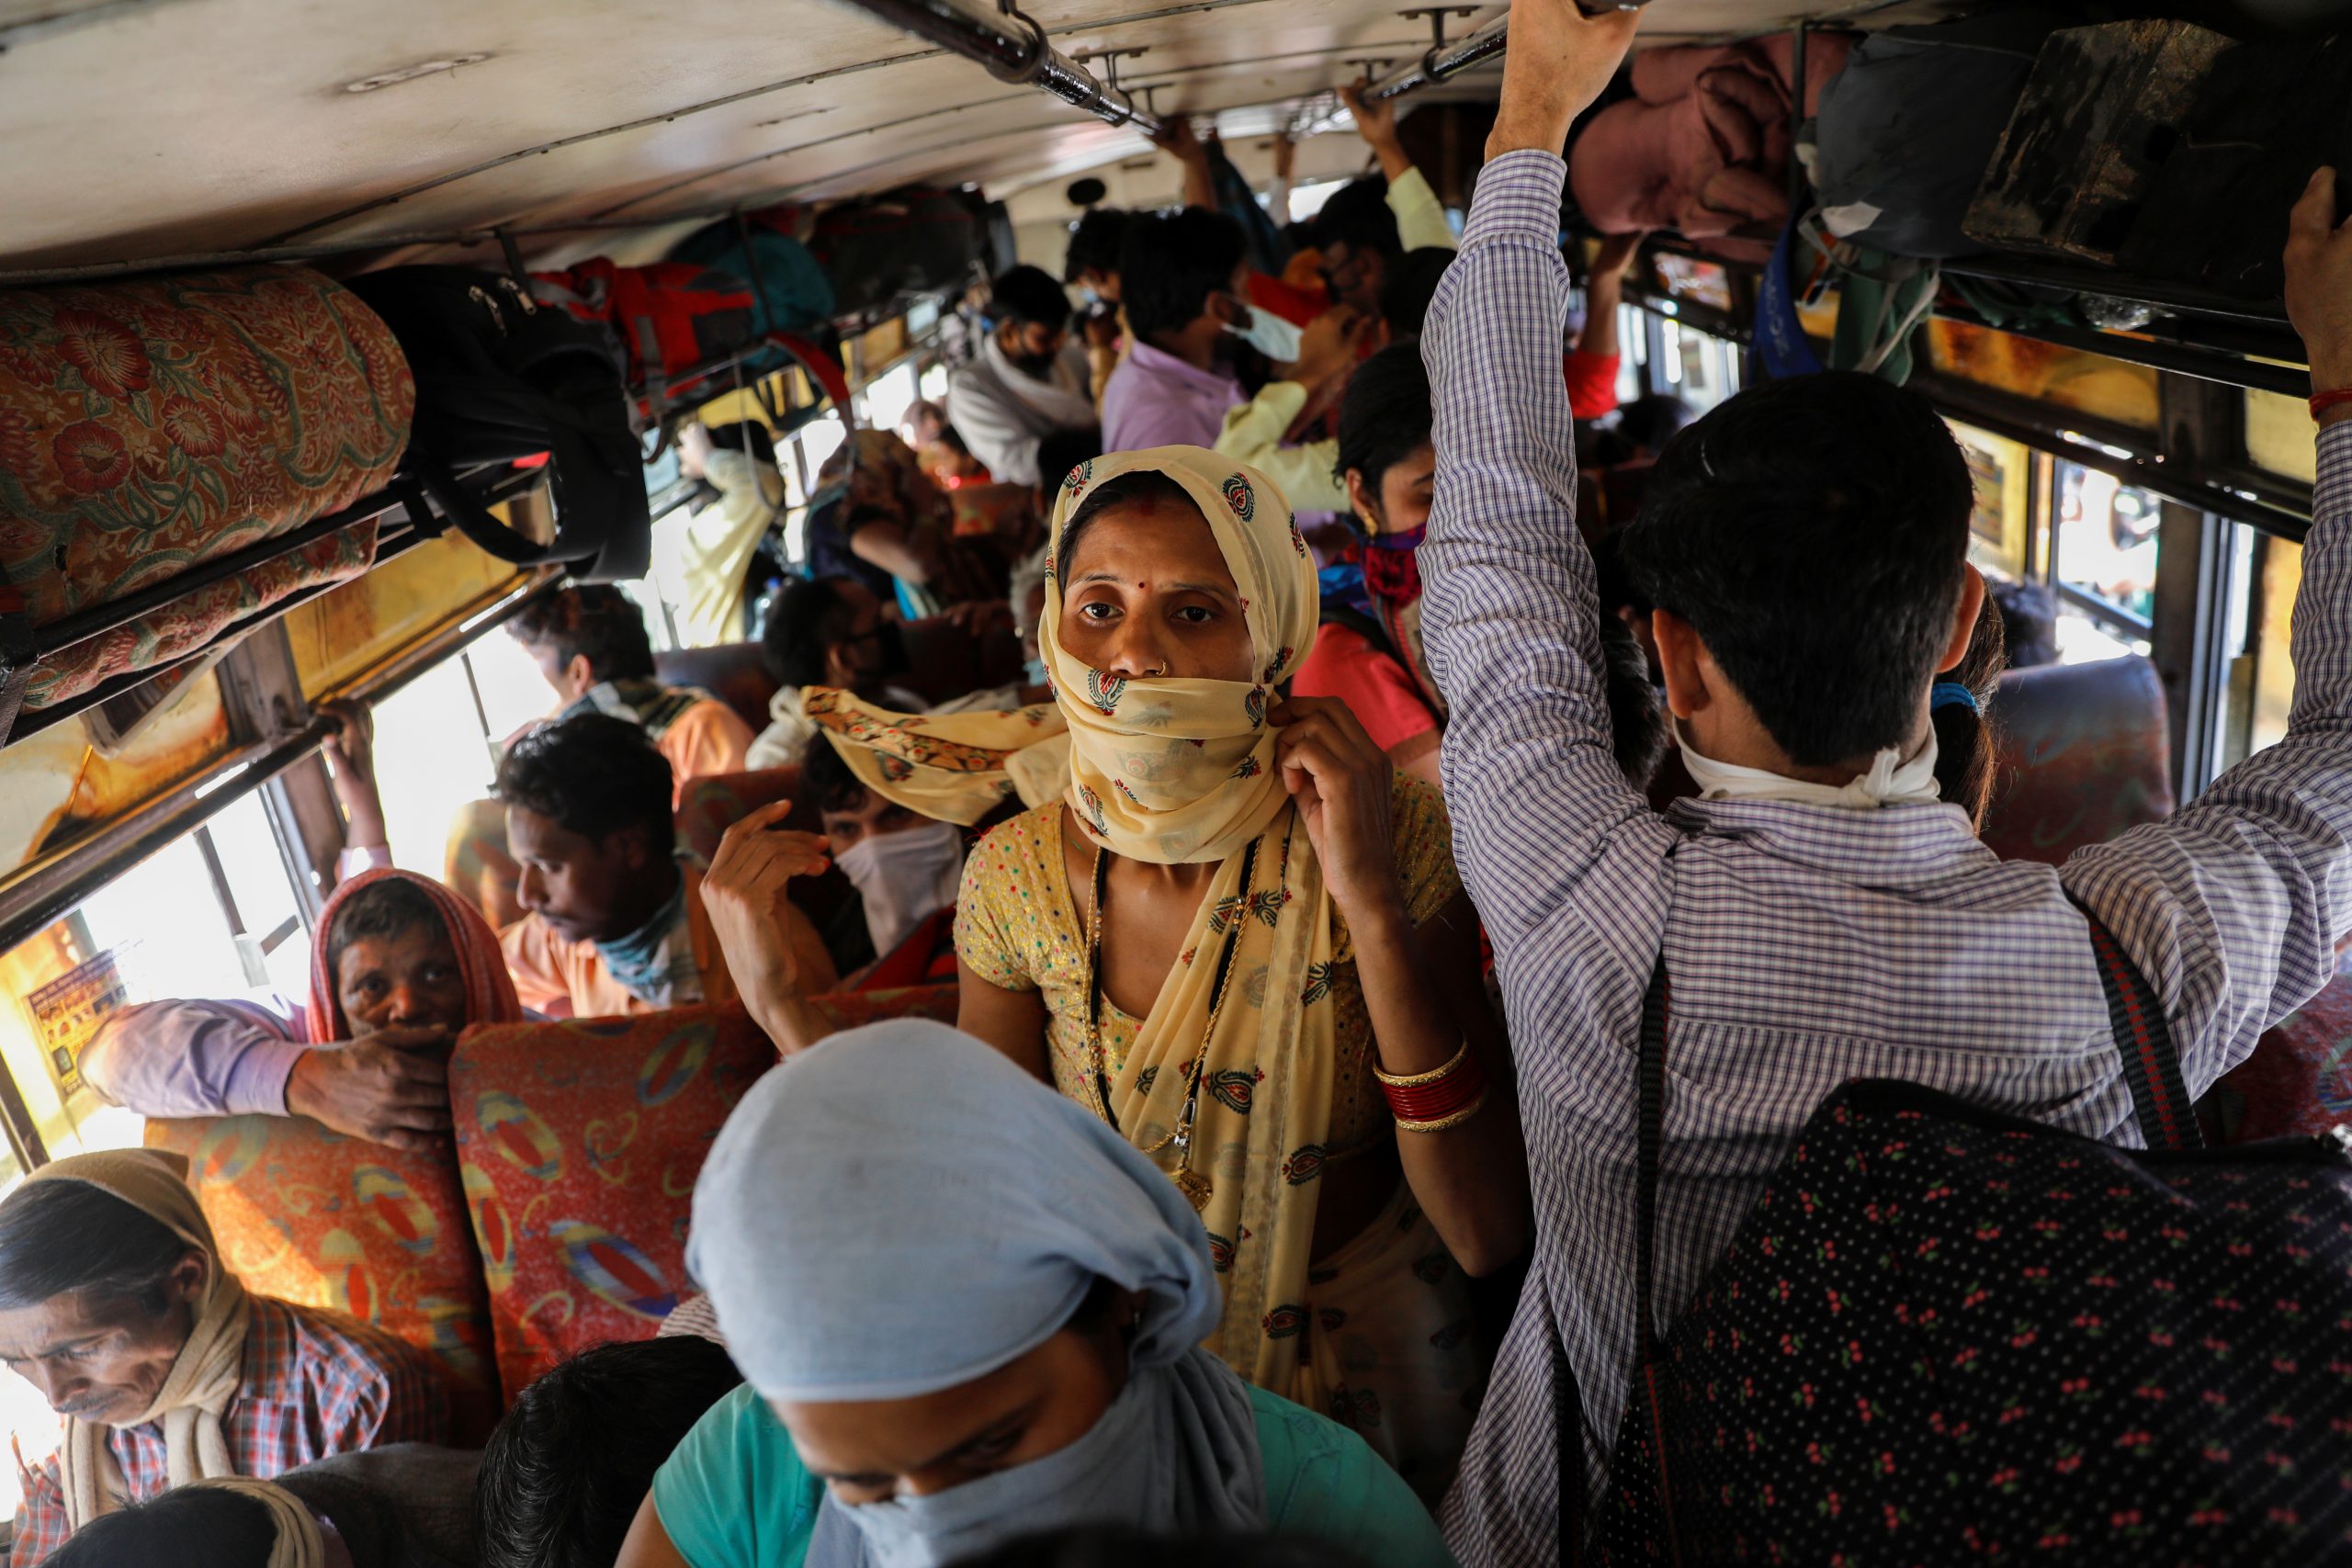 Народу в дом набилось битком. Автобус в Индии битком. Переполненный автобус в Индии. Индусы на автобусе. Переполненный транспорт в Индии.